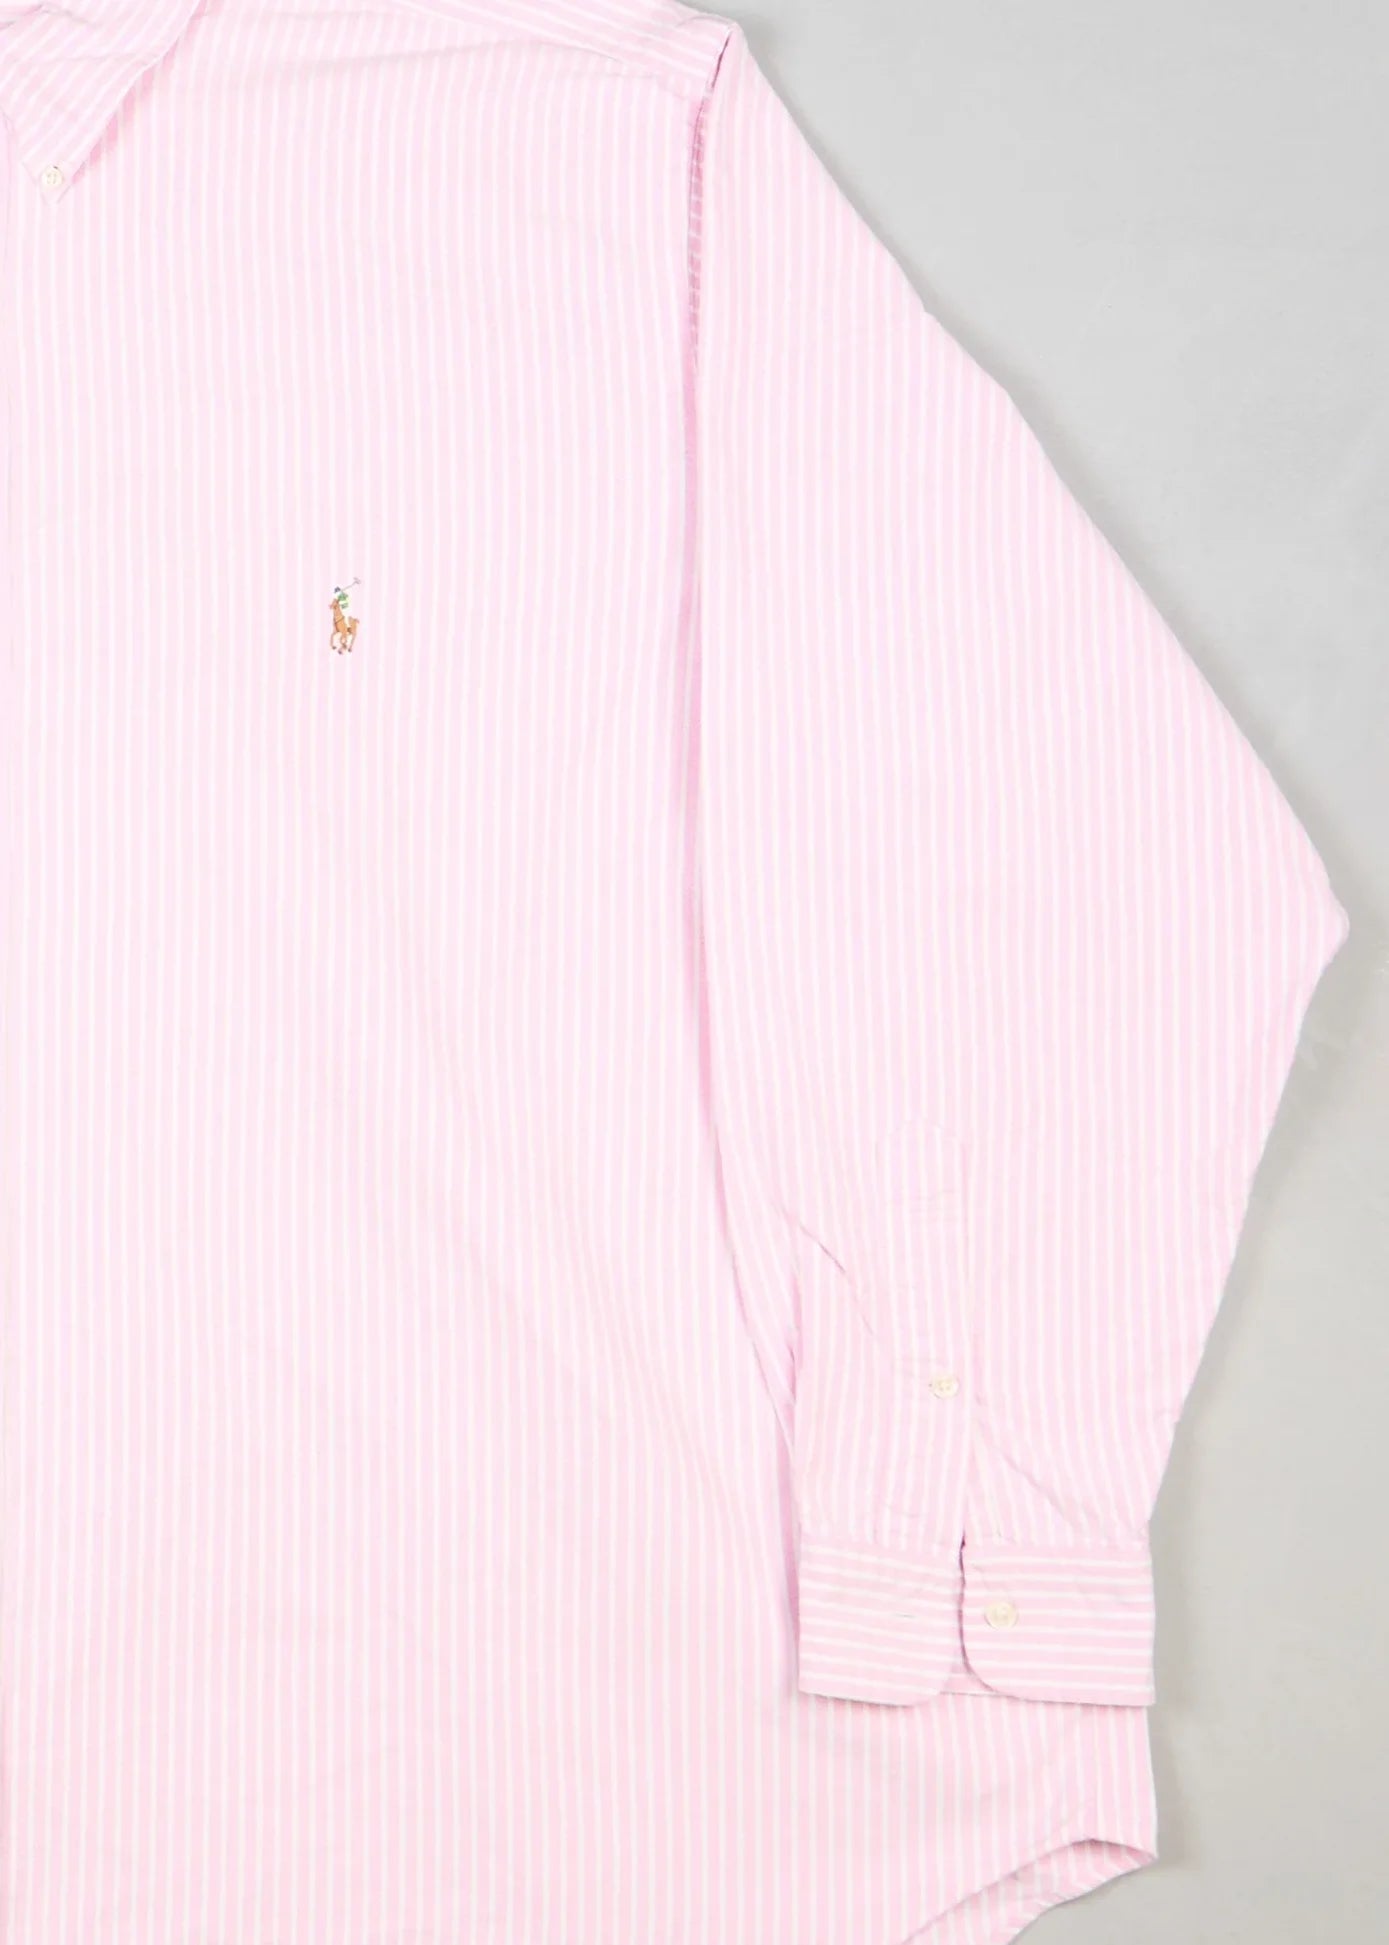 Ralph Lauren - Shirt (XXXL) Right